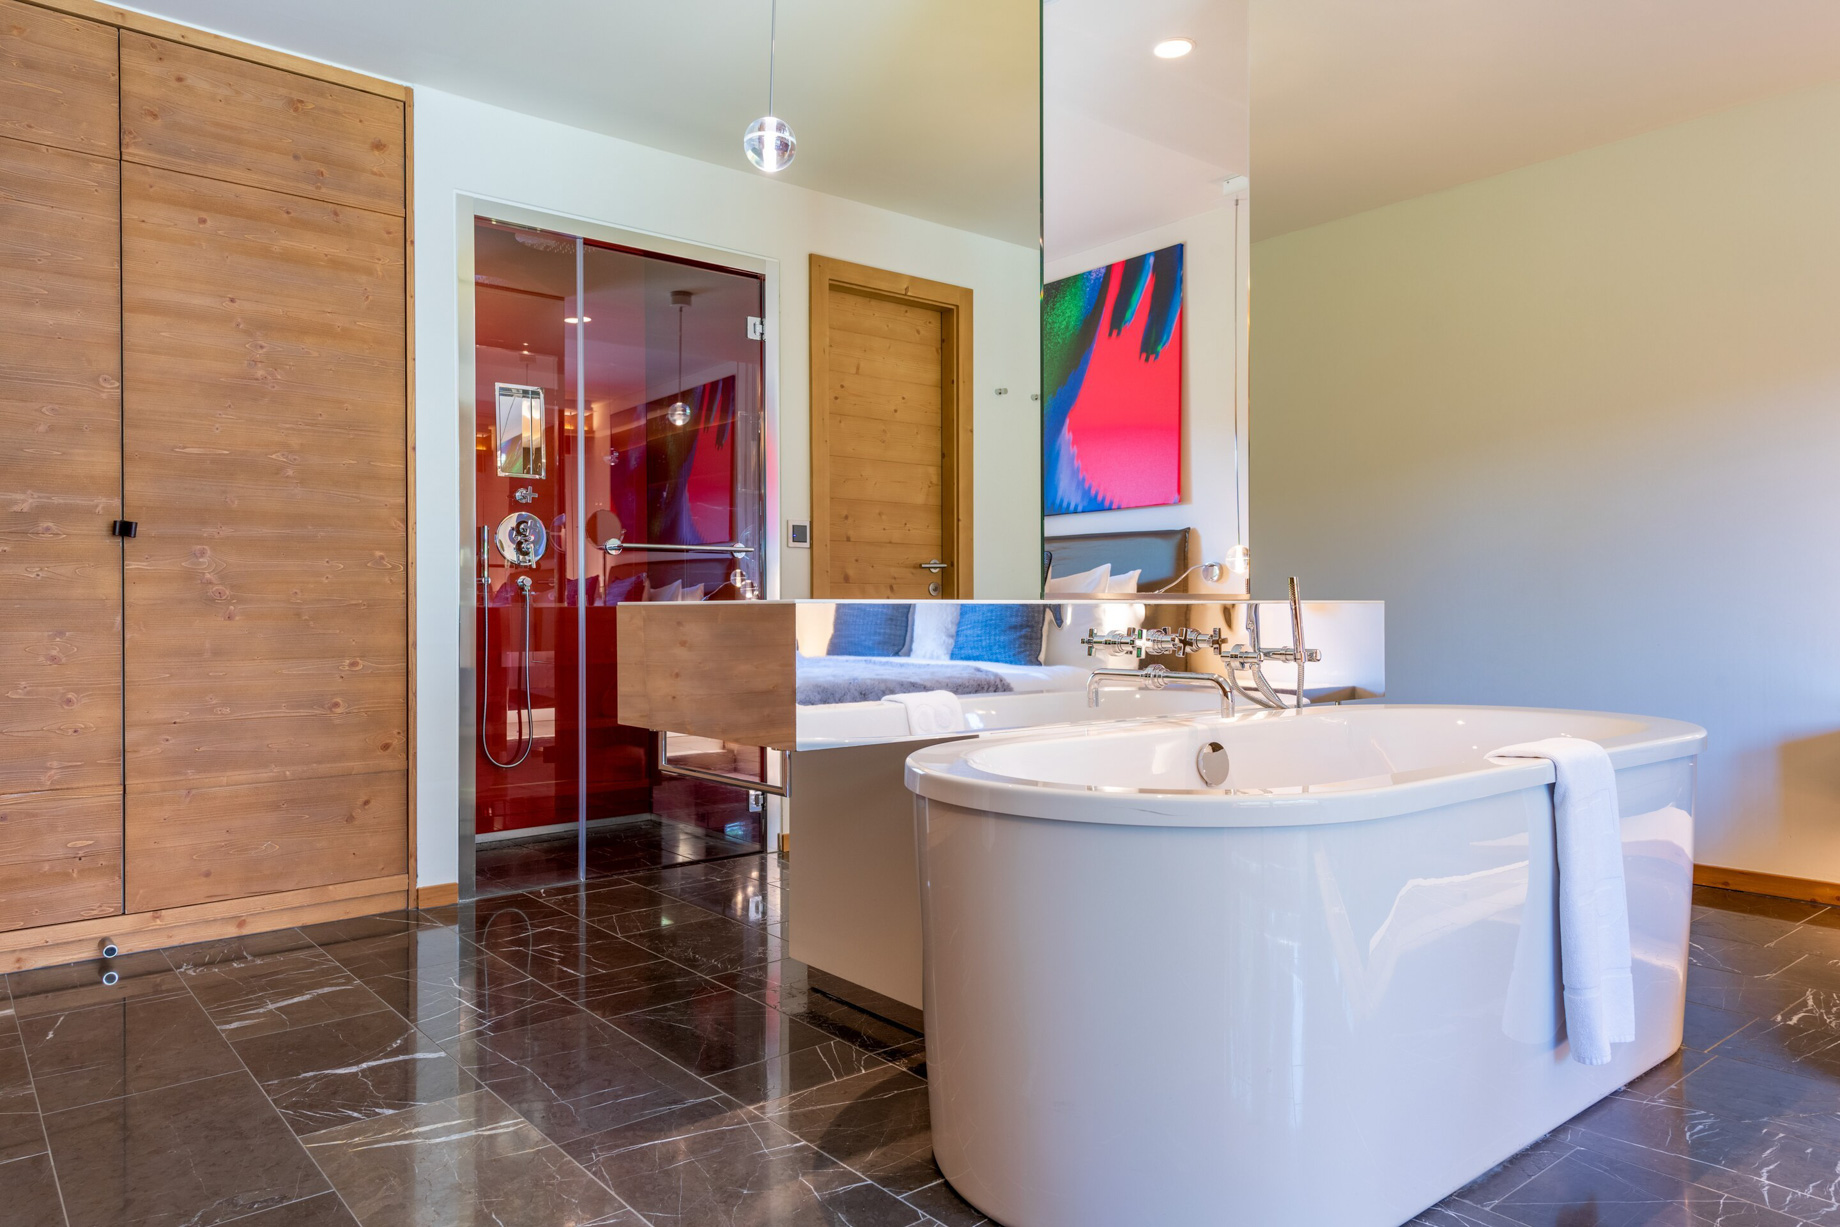 W Verbier Hotel – Verbier, Switzerland – Splendid Residence Bathroom